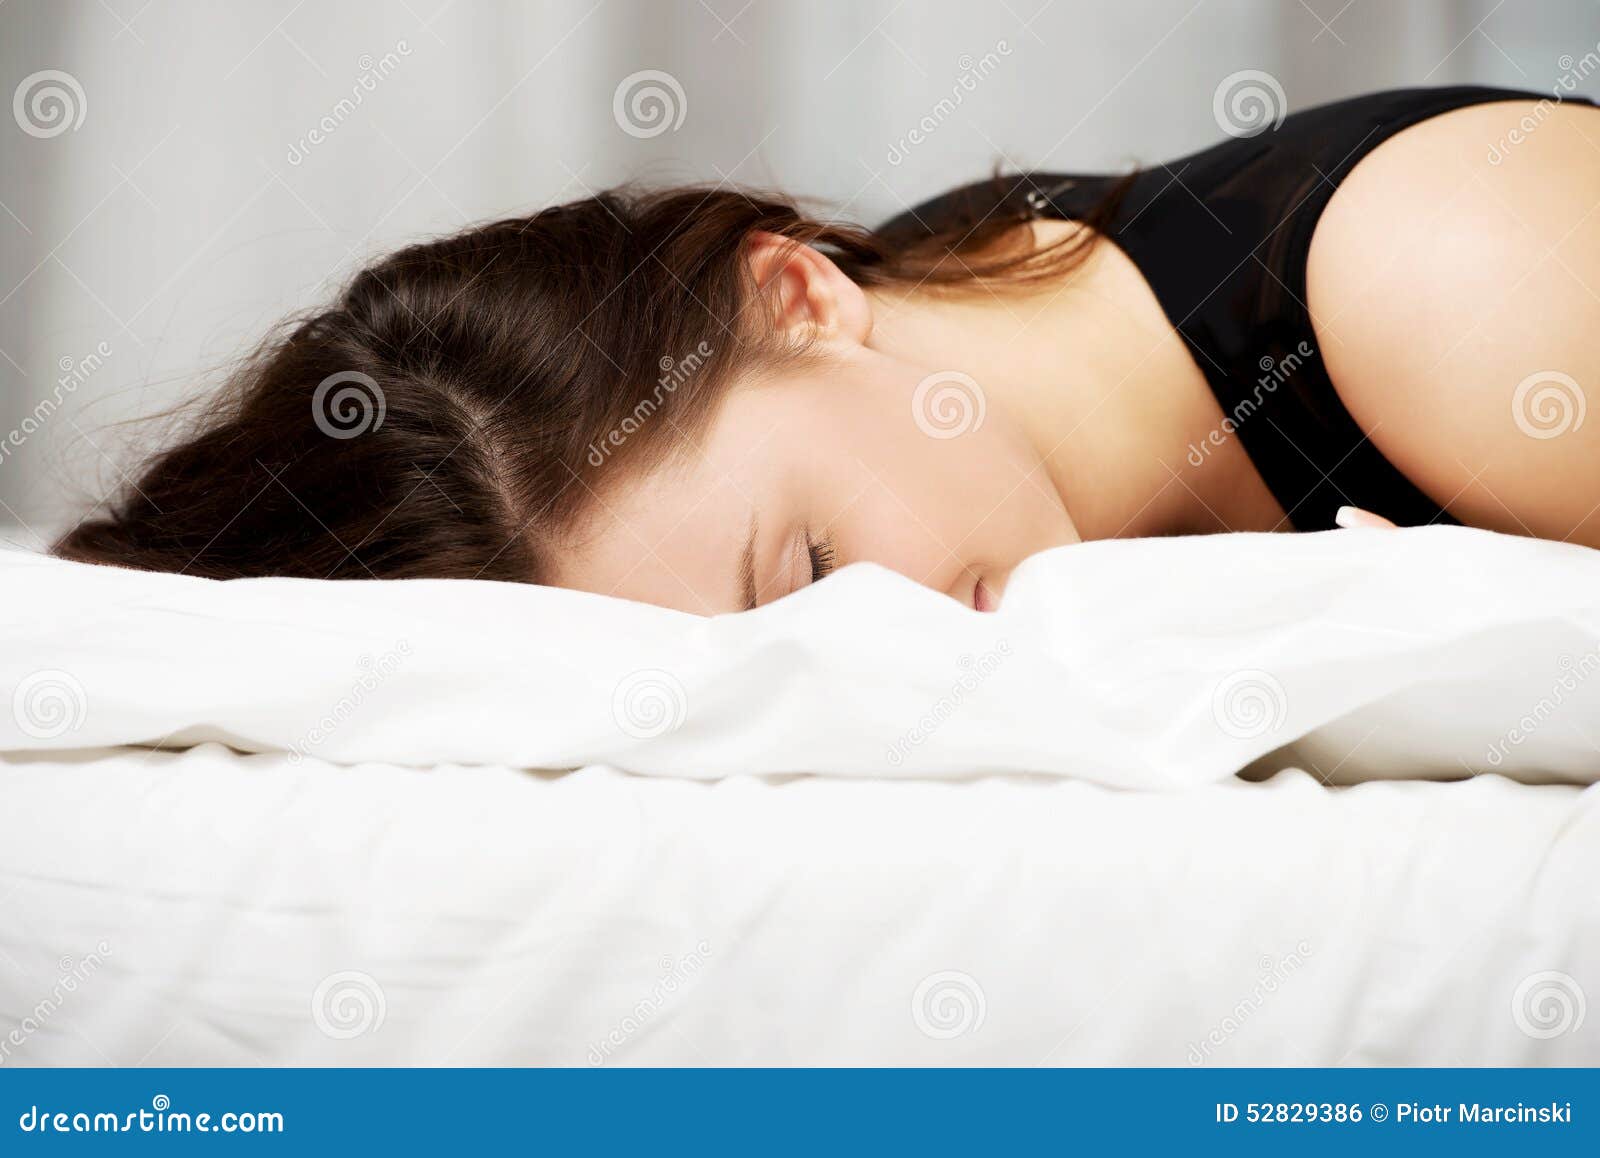 Девушки спящие на животе. Женщина лежит на животе. Спать на животе картинки женщине.